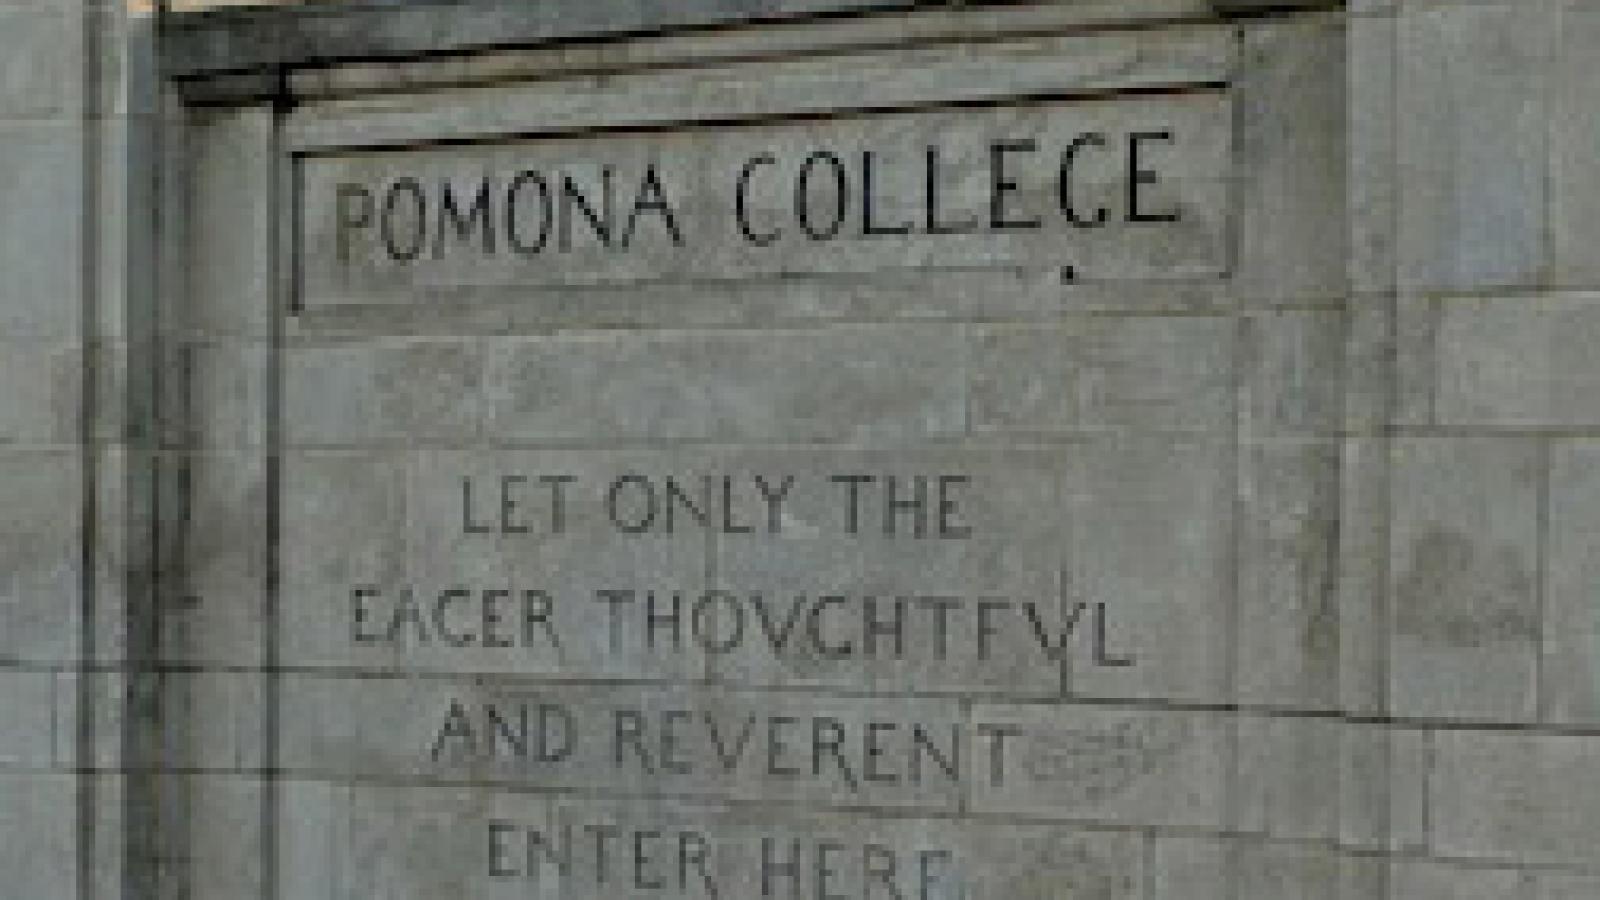 Pomona College sign